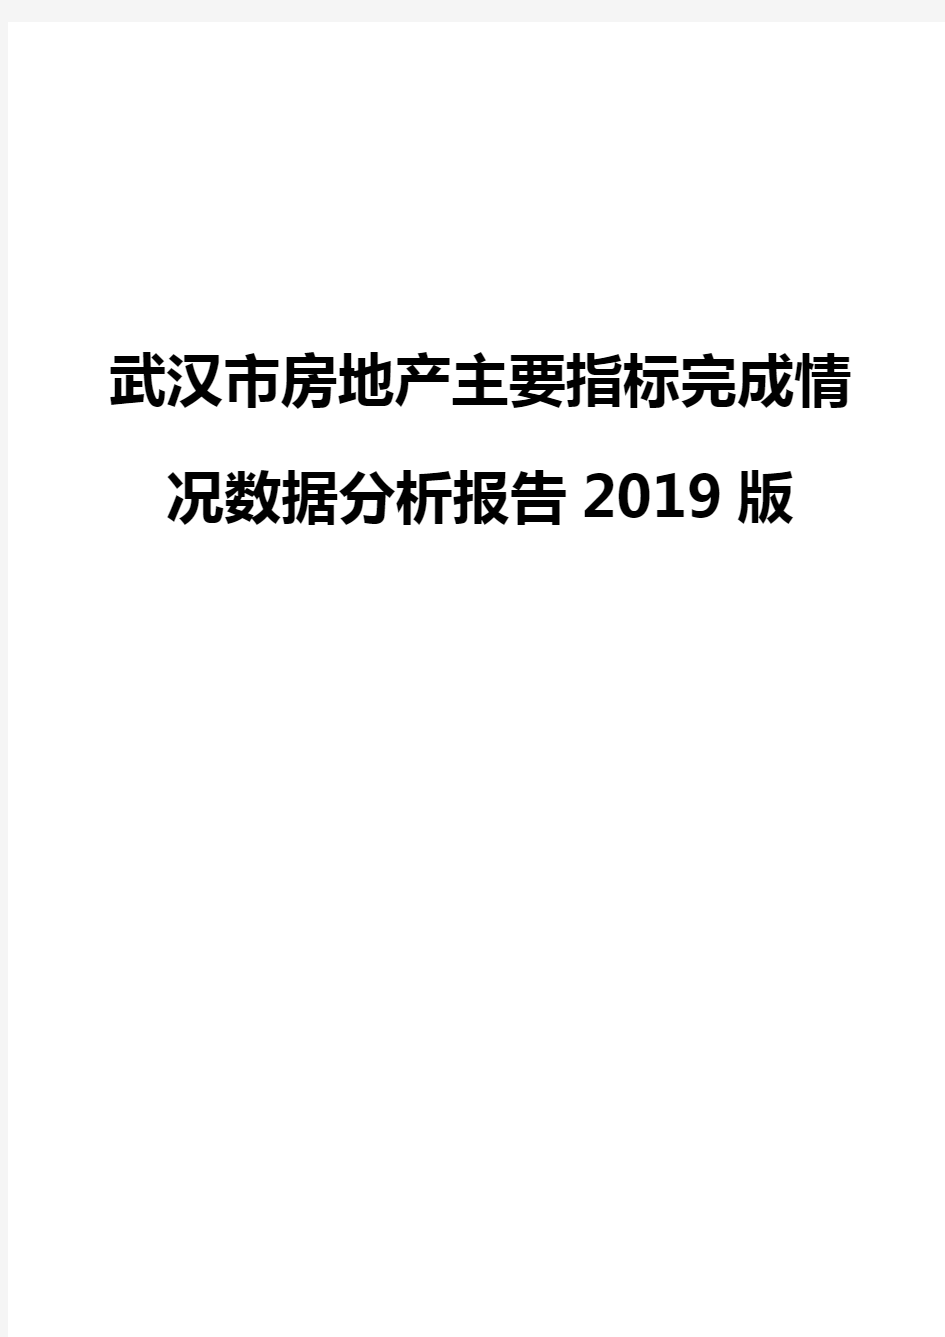 武汉市房地产主要指标完成情况数据分析报告2019版